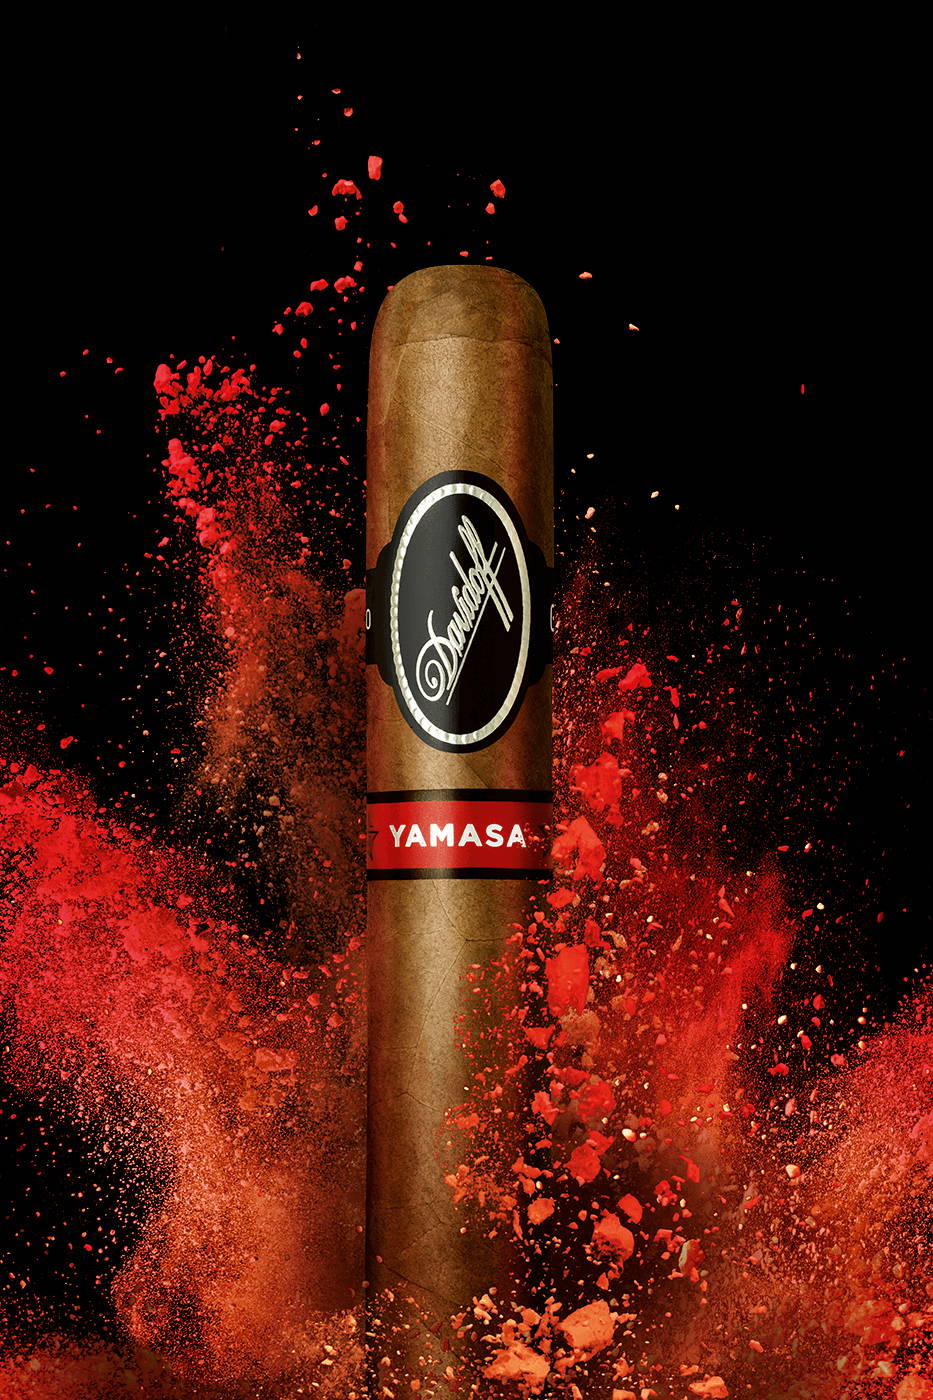 Eine Davidoff Yamasá-Zigarre, die aufrecht vor einem leuchtend roten Farbklecks steht.